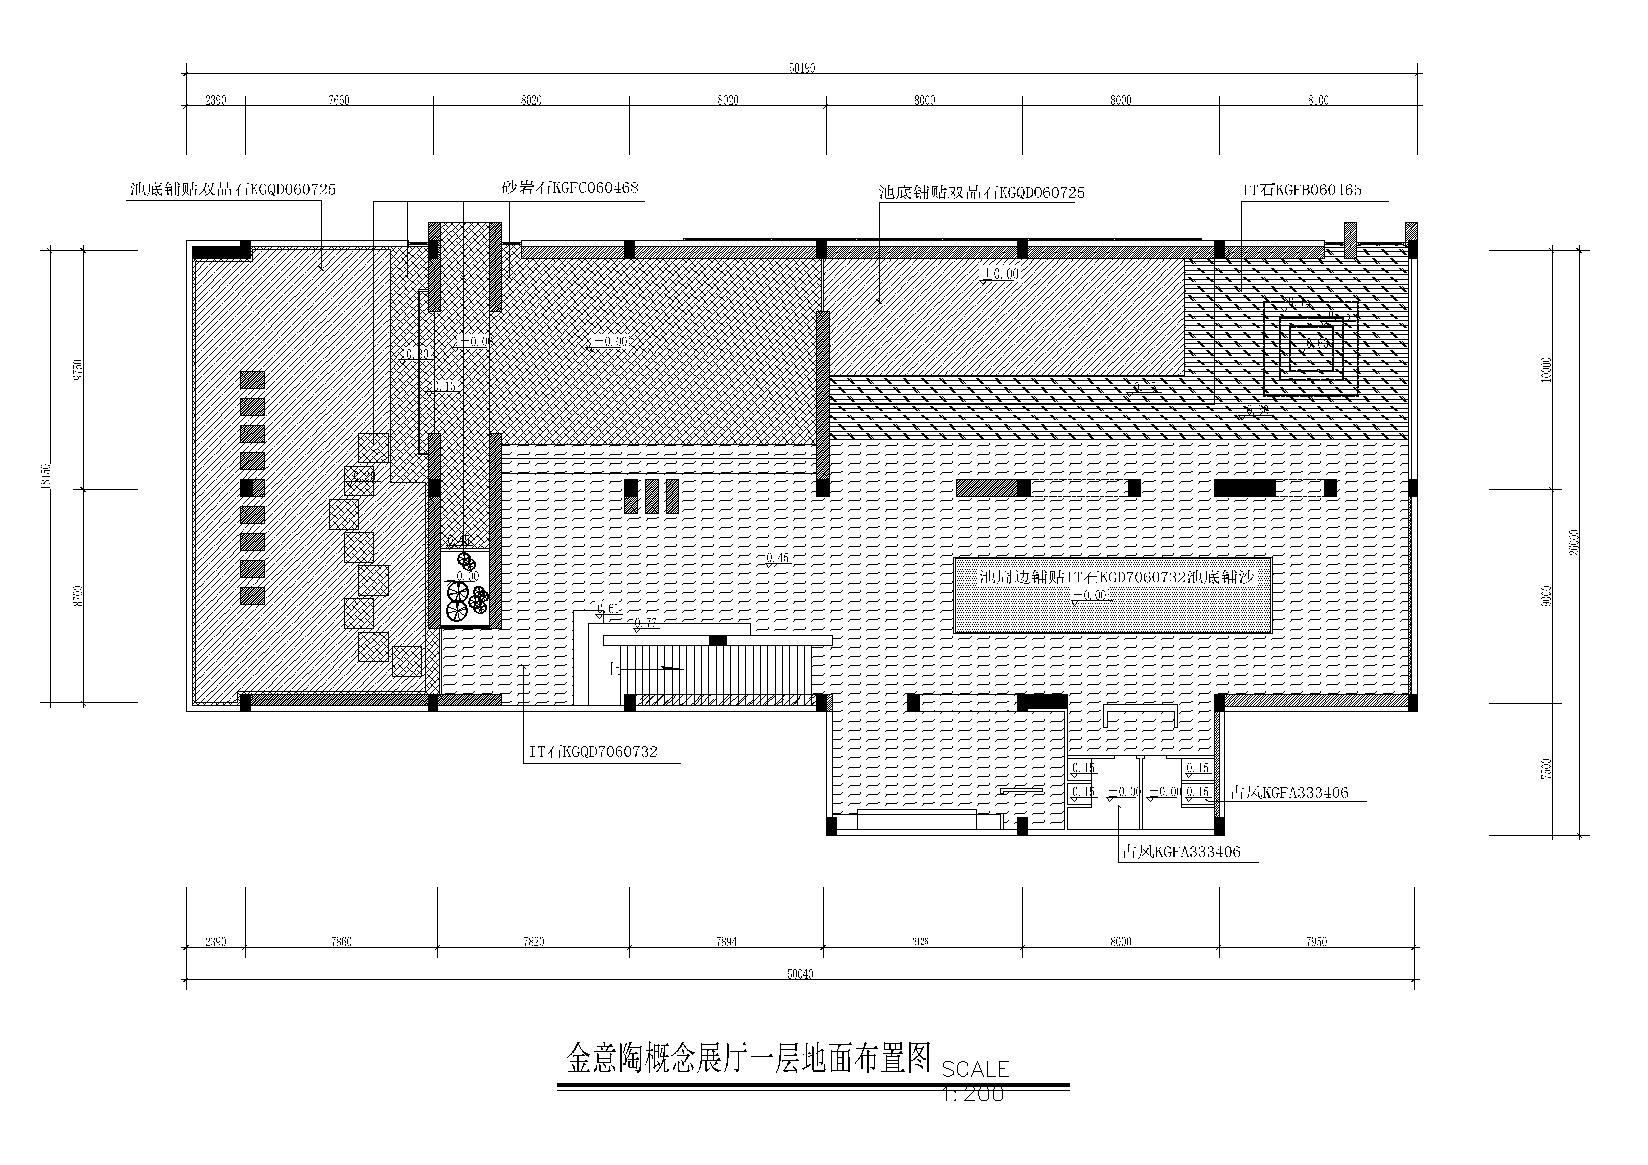 KITO某概念展厅艺术思想馆施工图+建筑外观-地面布置图10